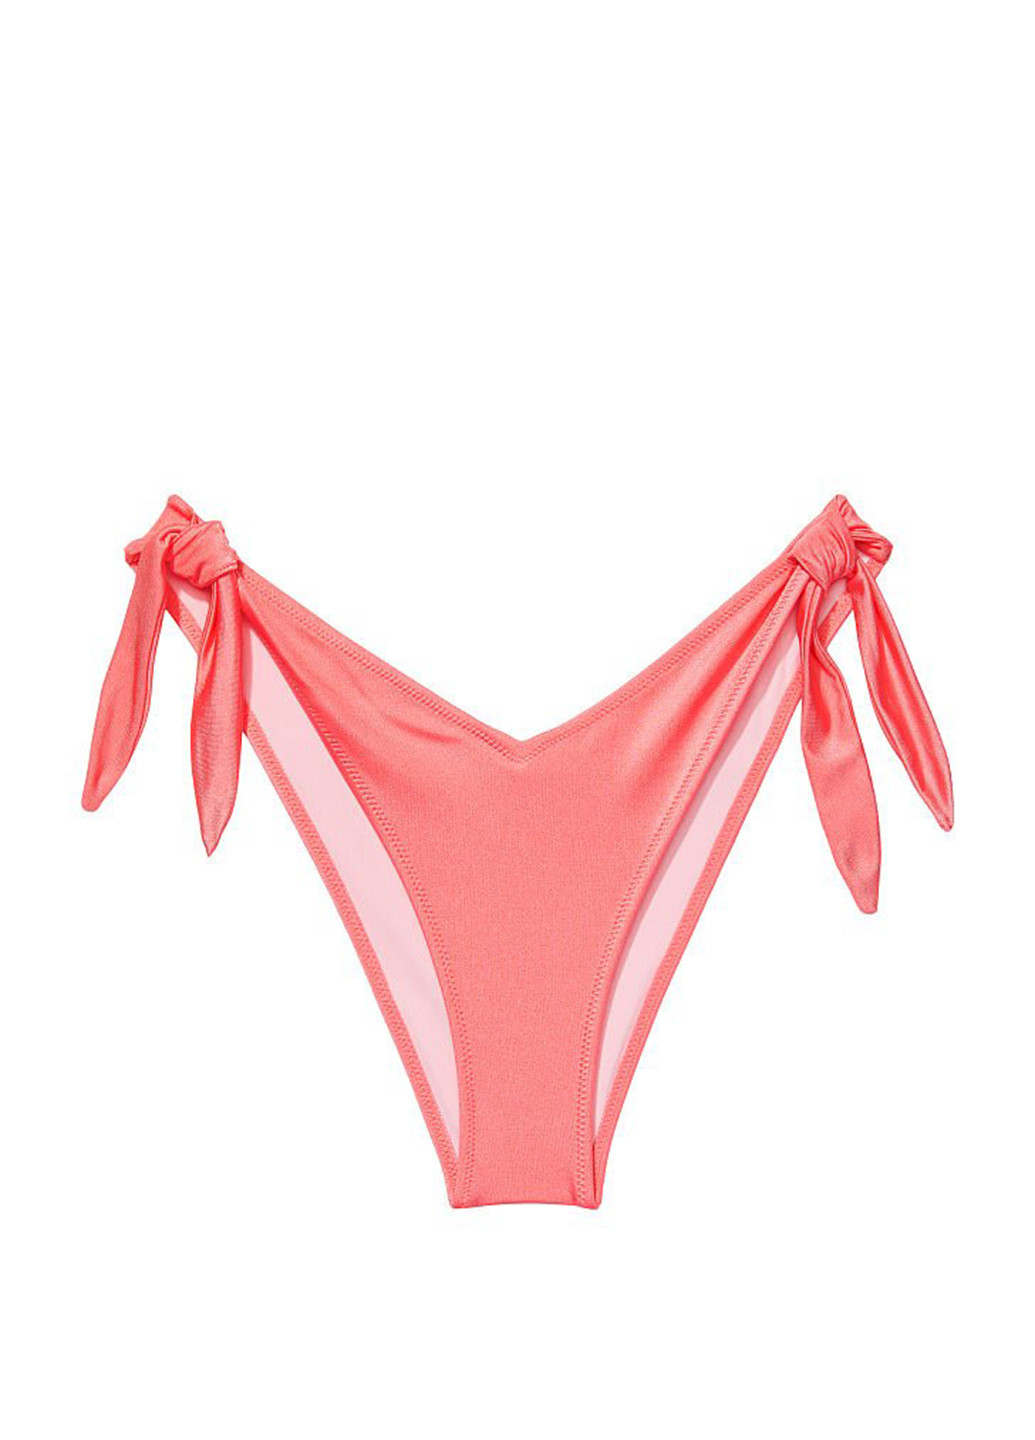 Розовый демисезонный купальник (лиф, трусики) бандо, раздельный, халтер Victoria's Secret